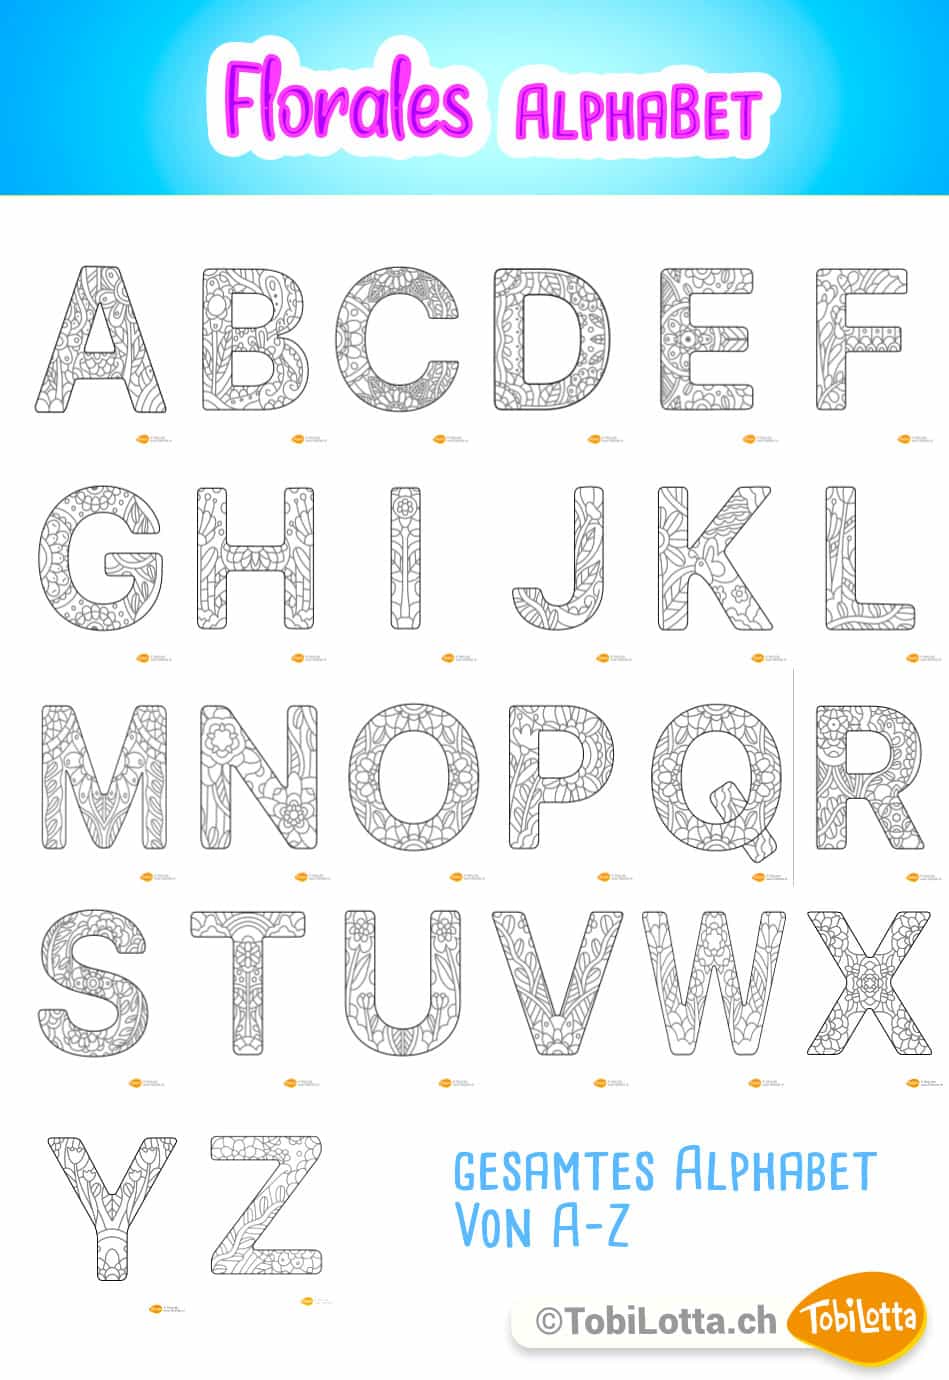 81129 Alphabet a-z 3d buchstaben leuchtbox basteln ausmlvorlage erwachsene Floreale abc mandala Mandala Muster Ausmalbilder für erwachsene download pdf vorlage Leuchttafel basteln diy leuchtbox